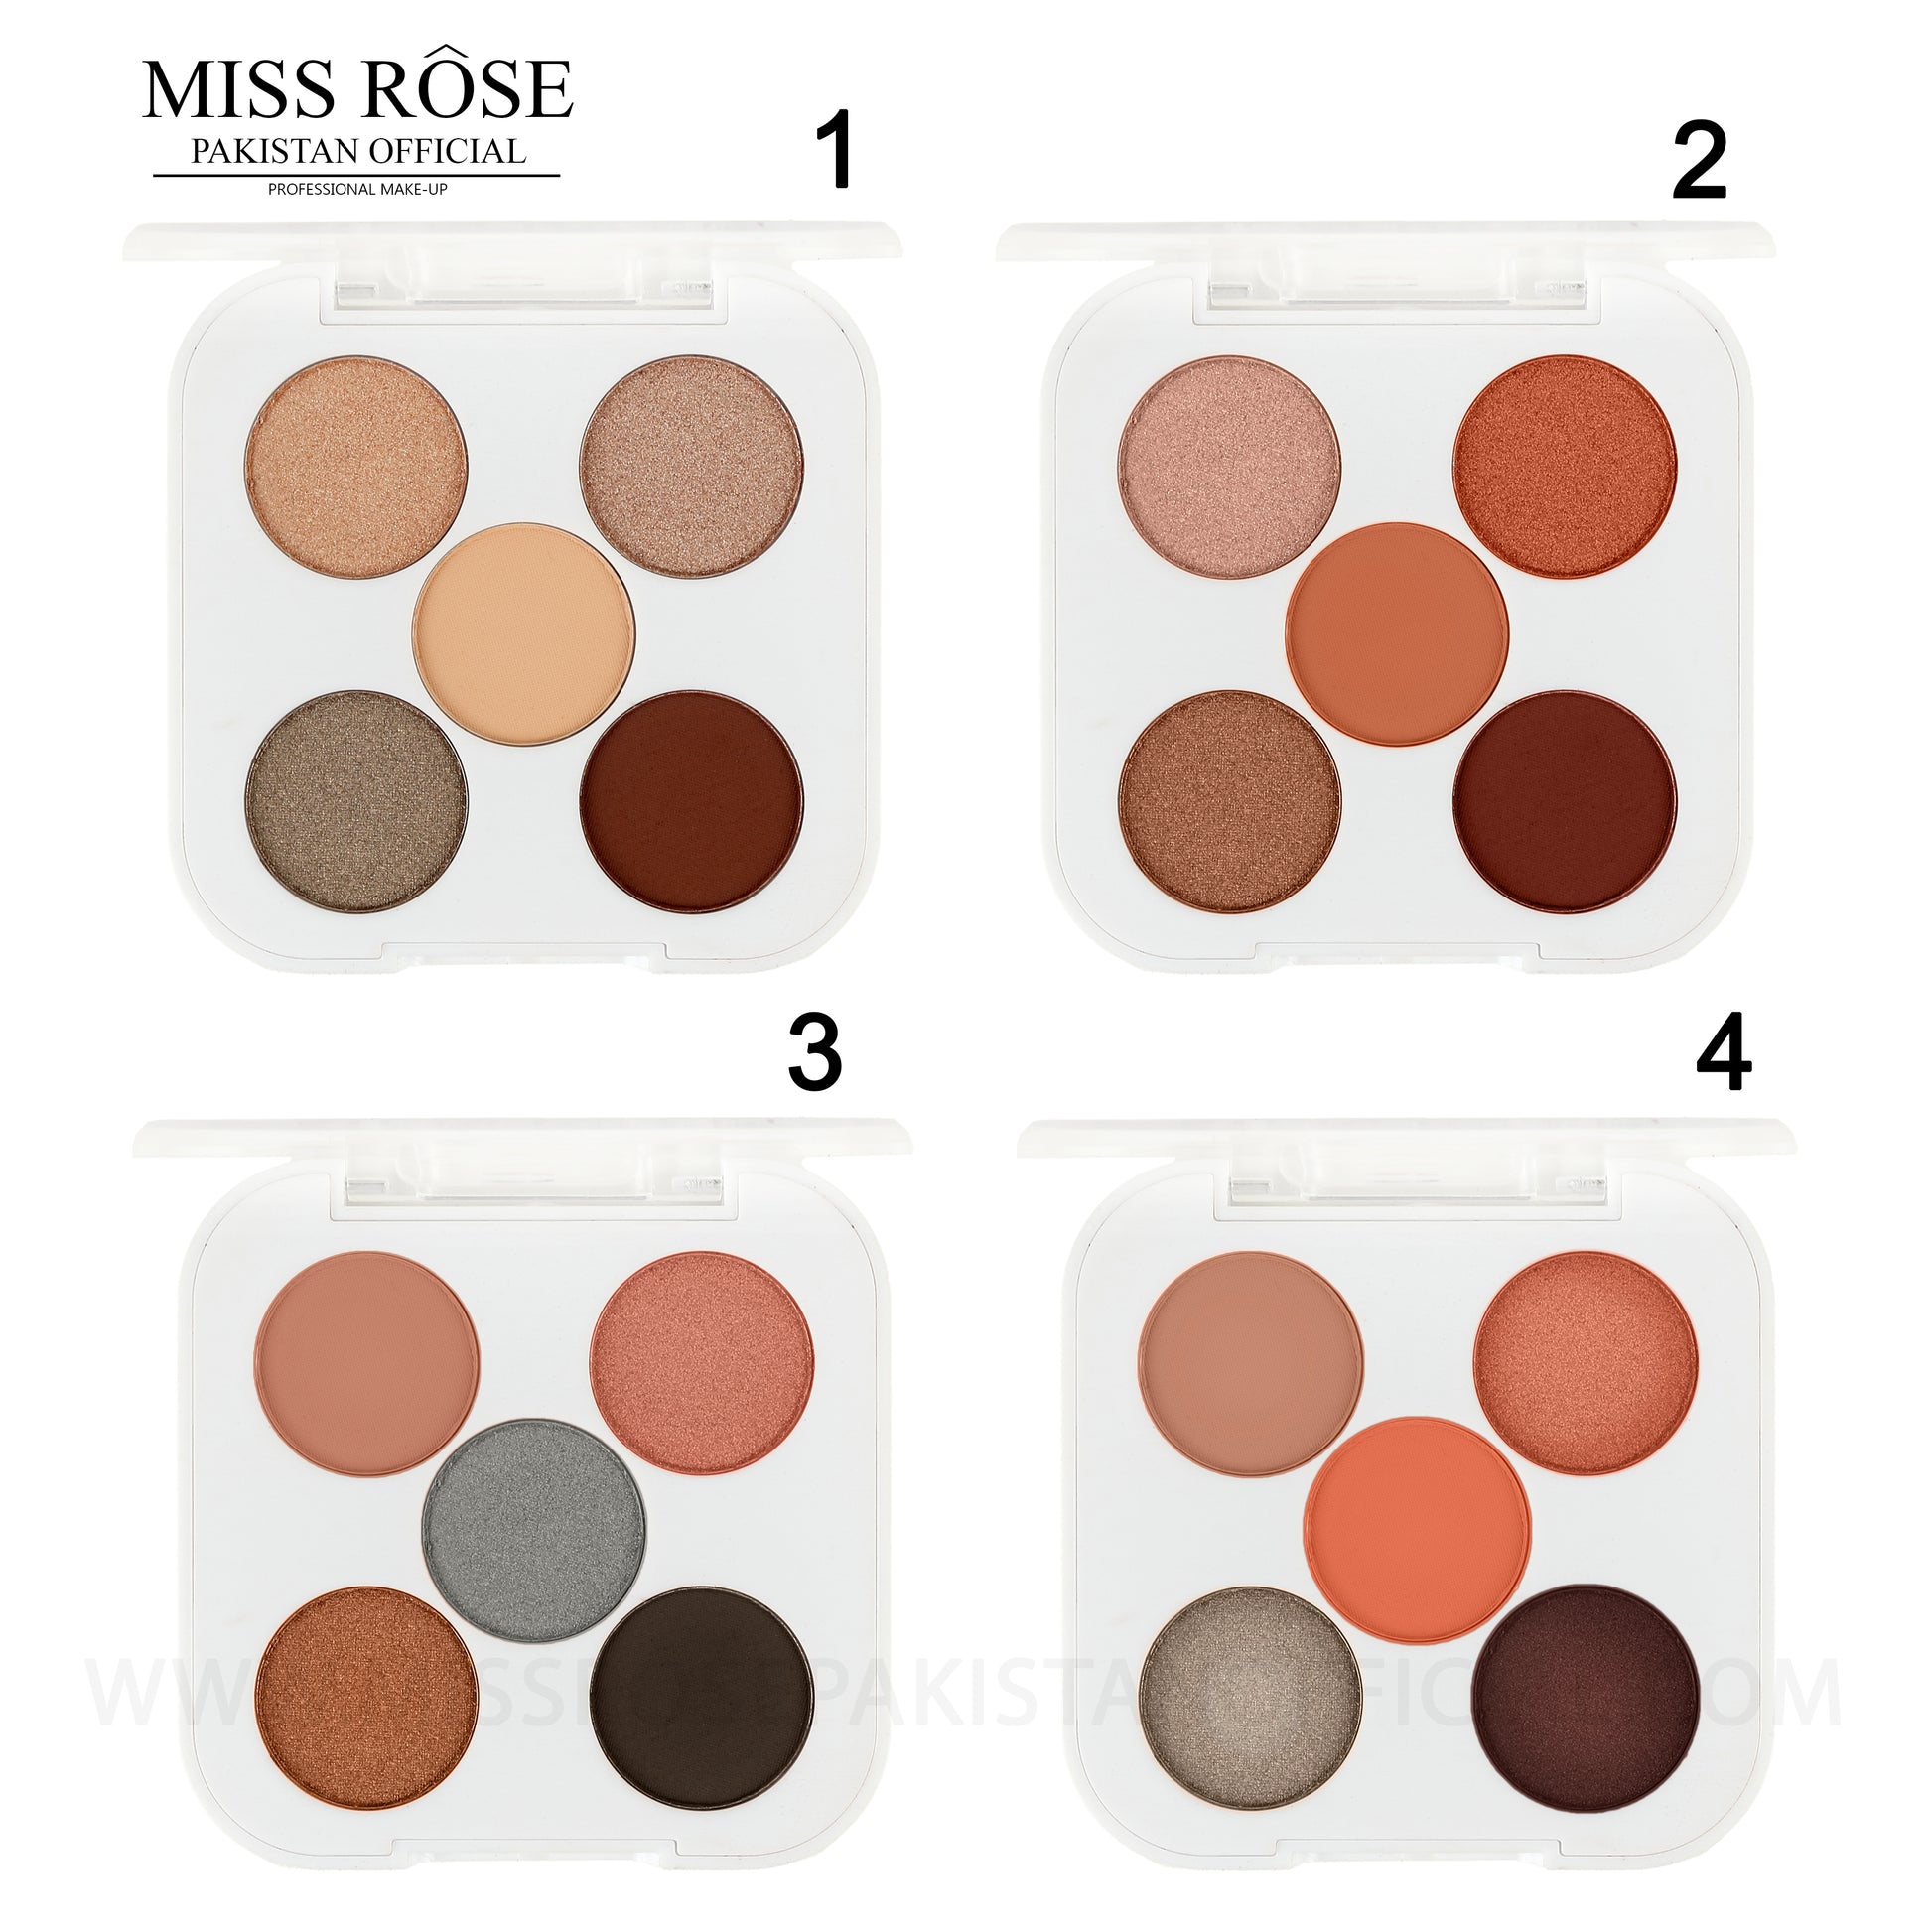 Miss Rose makeup